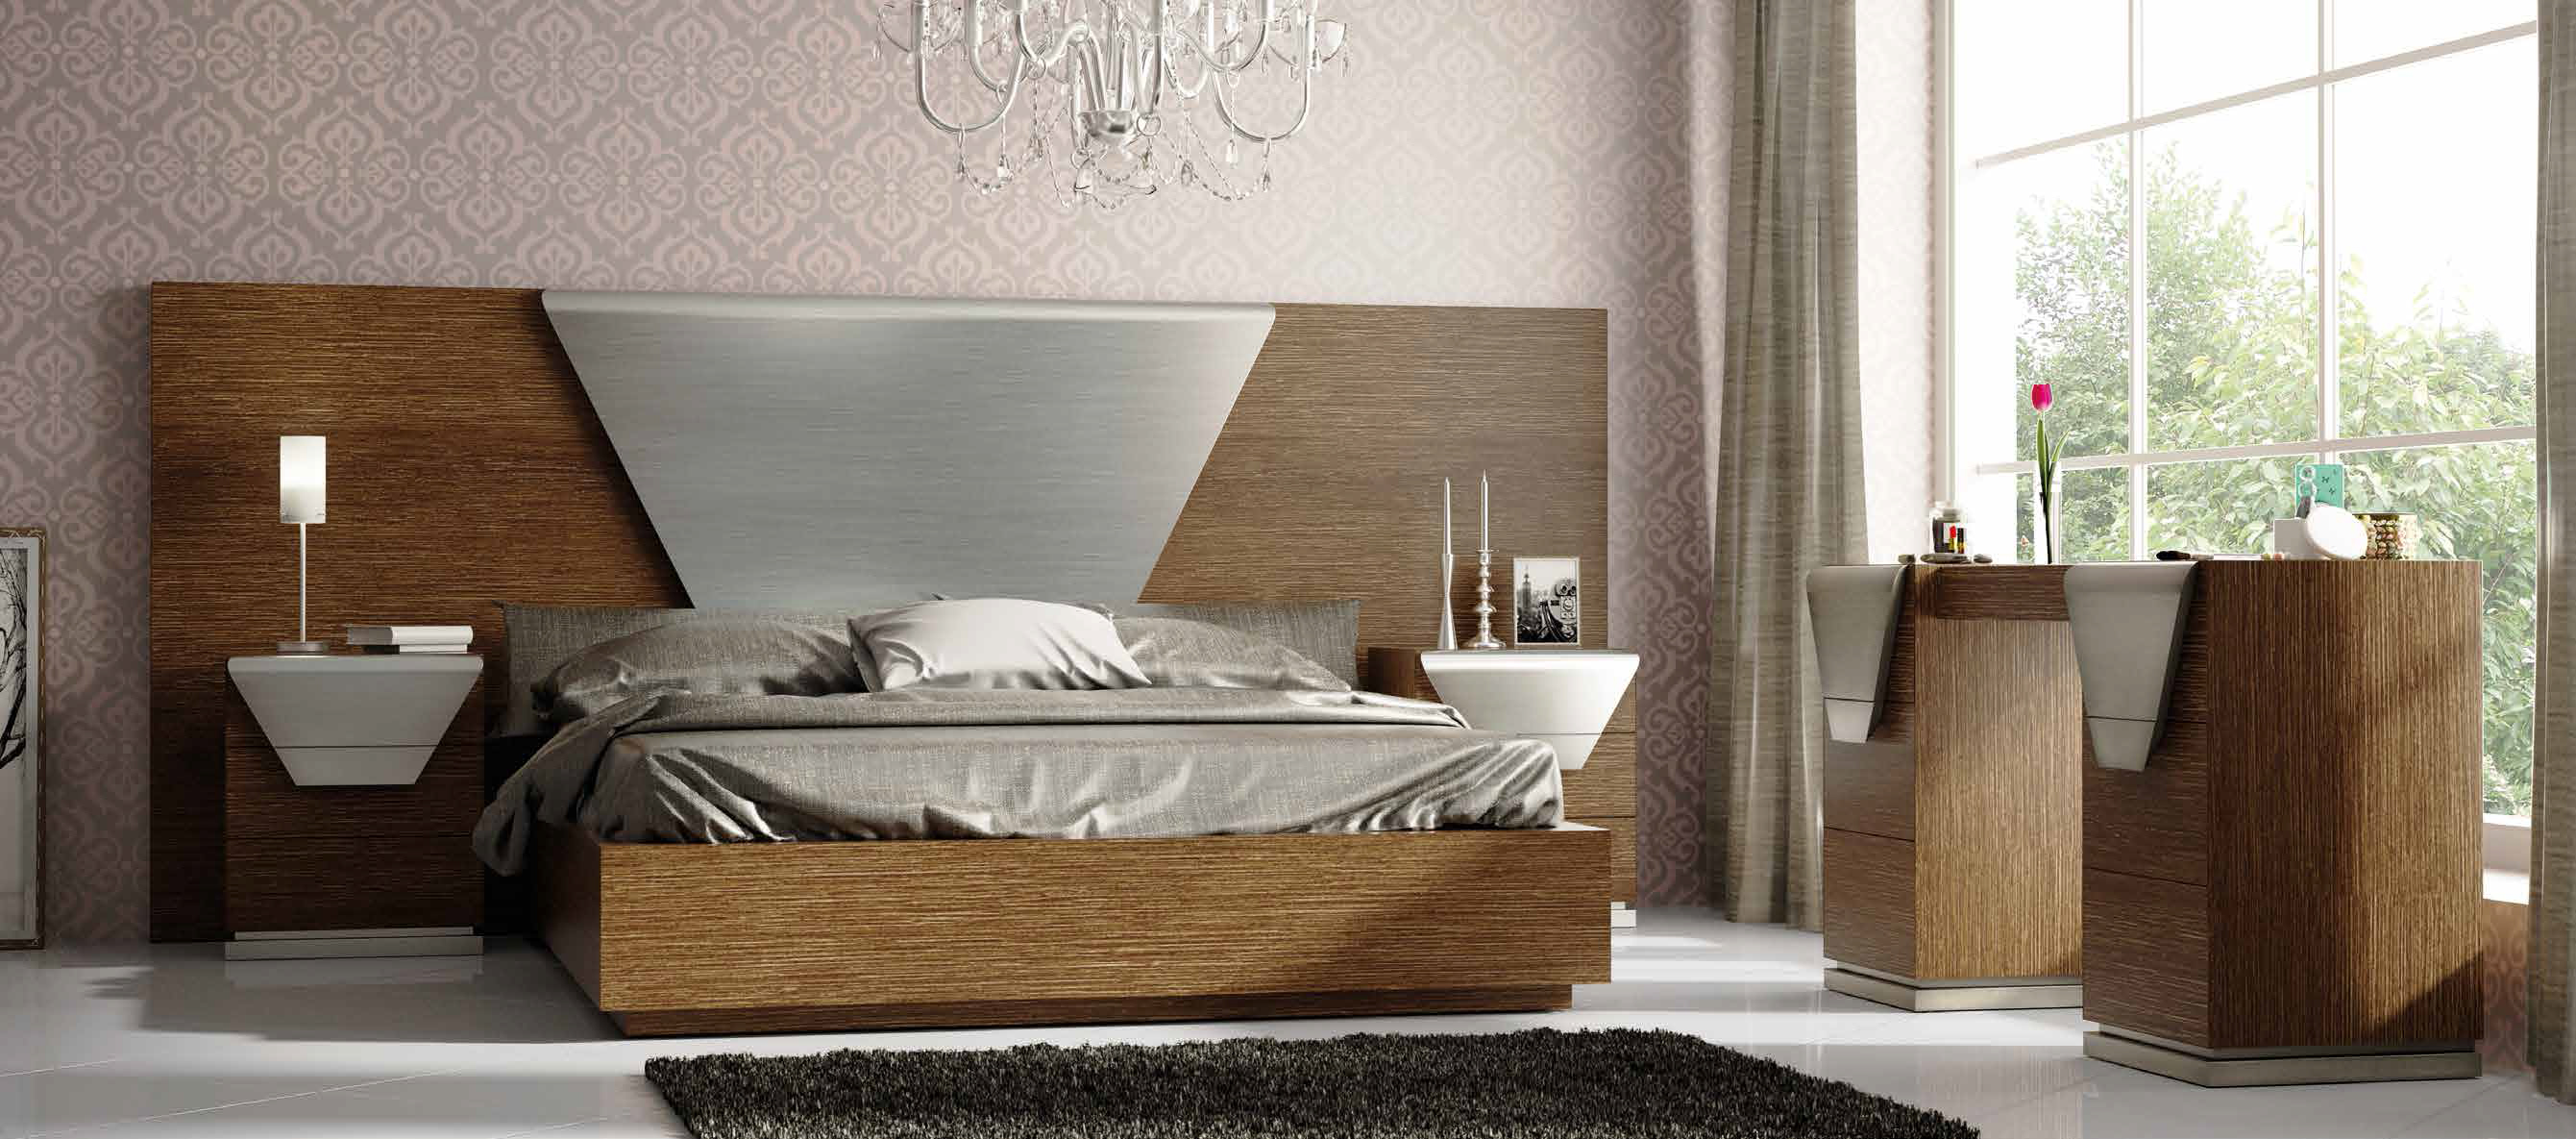 Brands Franco Furniture Avanty Bedrooms, Spain DOR 86